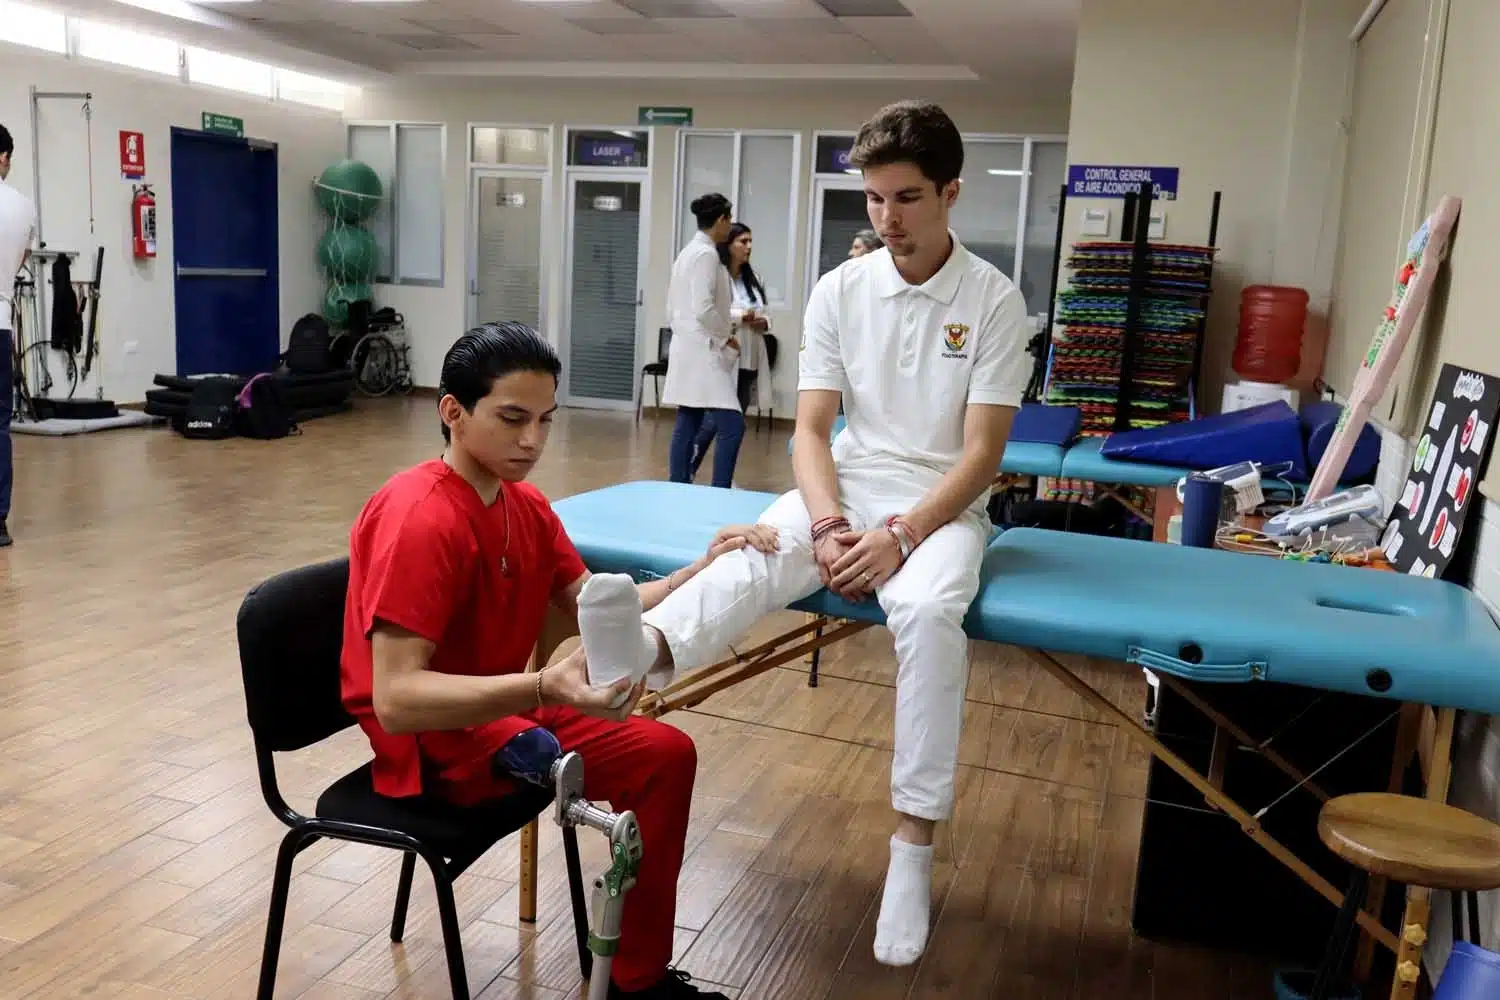 Una persona sentada con una prótesis de pierna dando terapia a otra